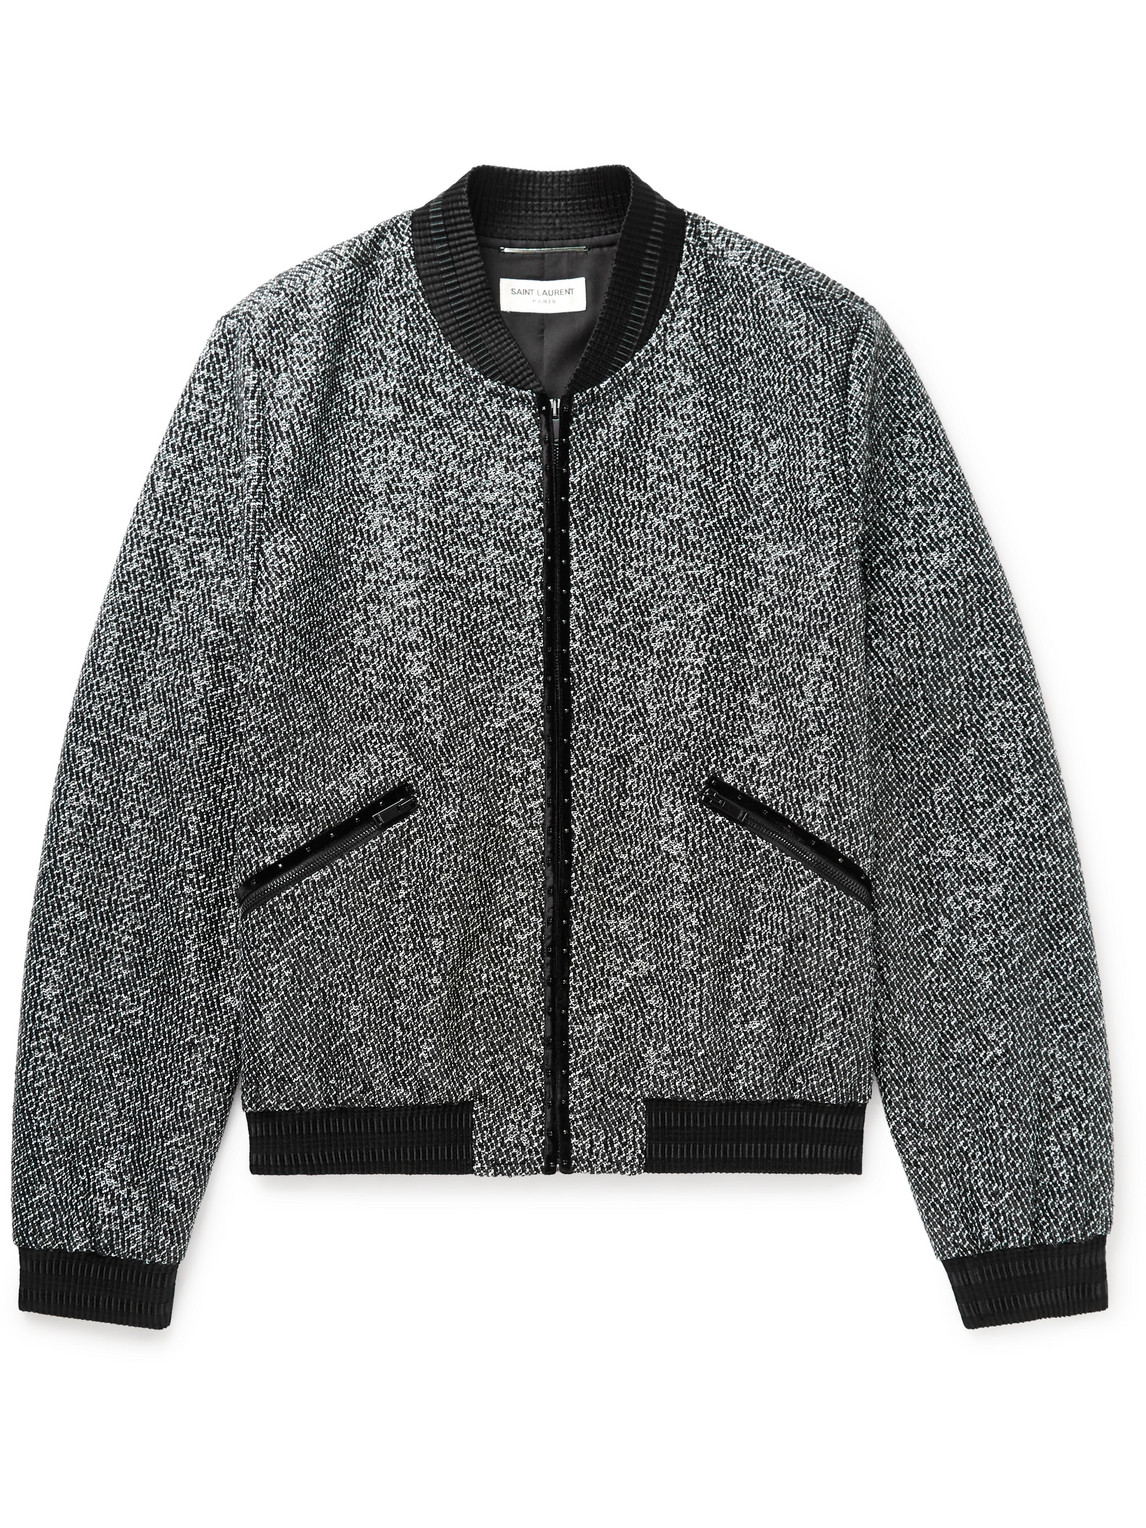 Saint Laurent Teddy Slim-fit Sequinned Cotton-blend Tweed Bomber Jacket In Black